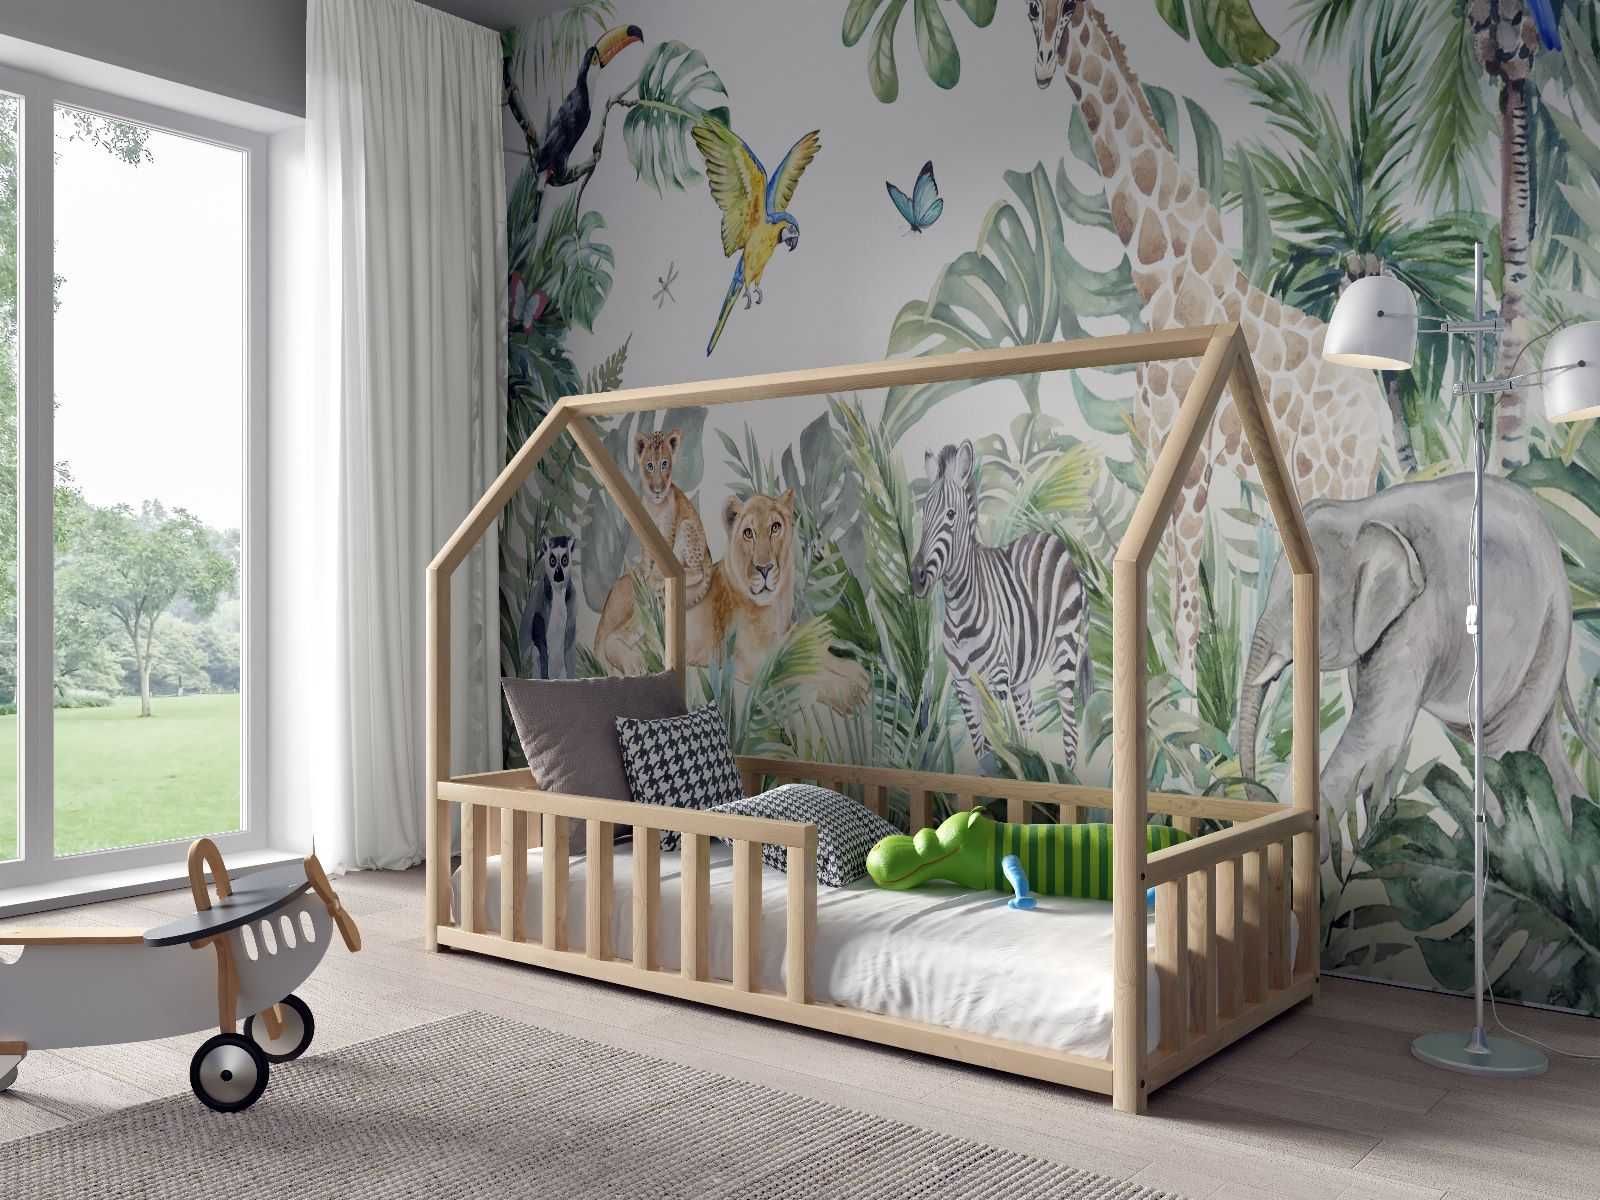 Drewniane łóżko dziecięce ANTOŚ w stylu skandynawskim